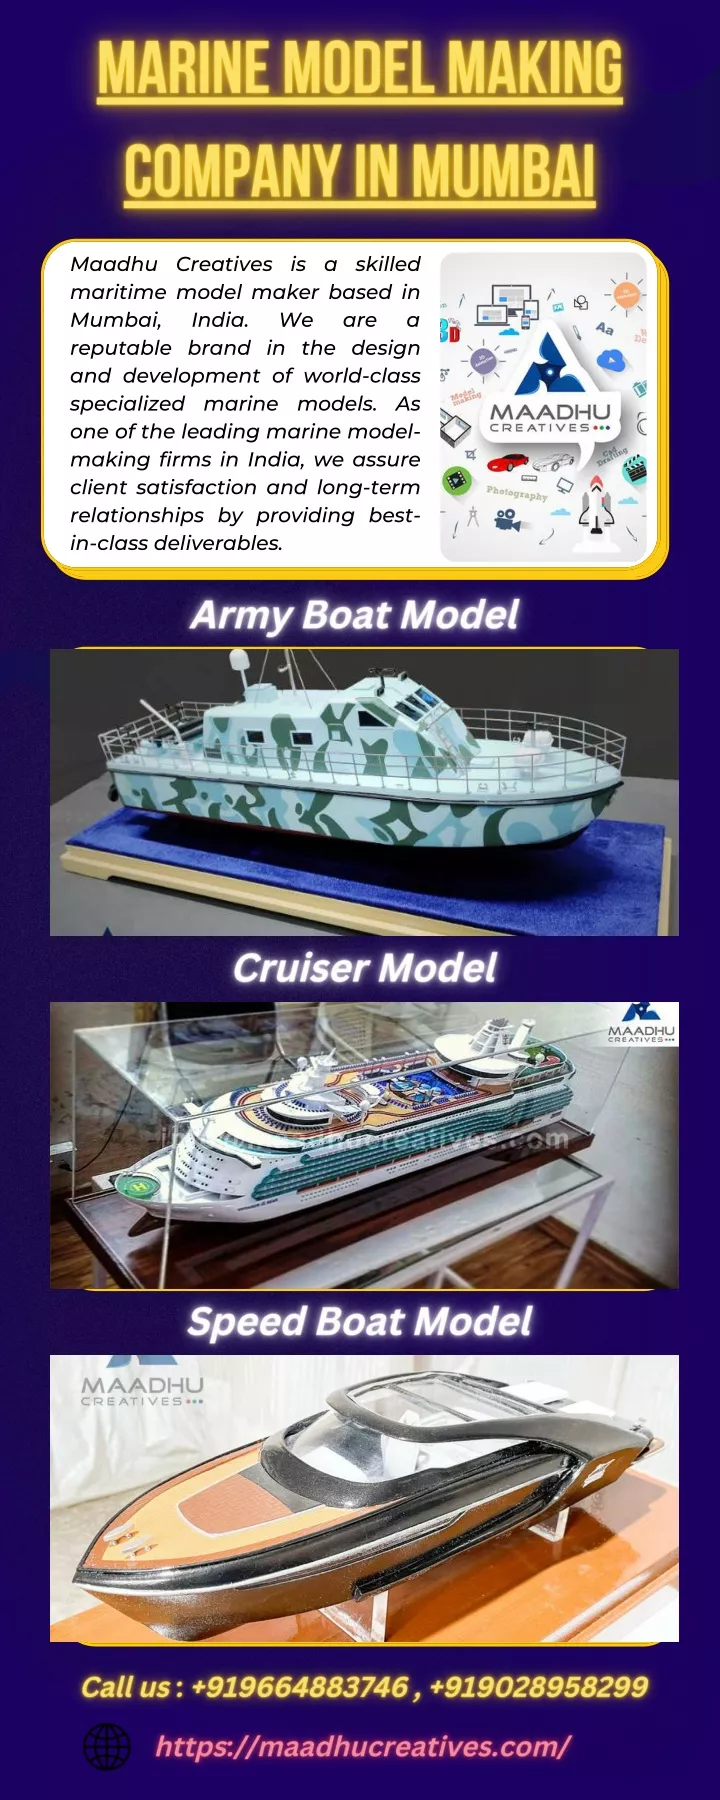 maadhu creatives is a skilled maritime model